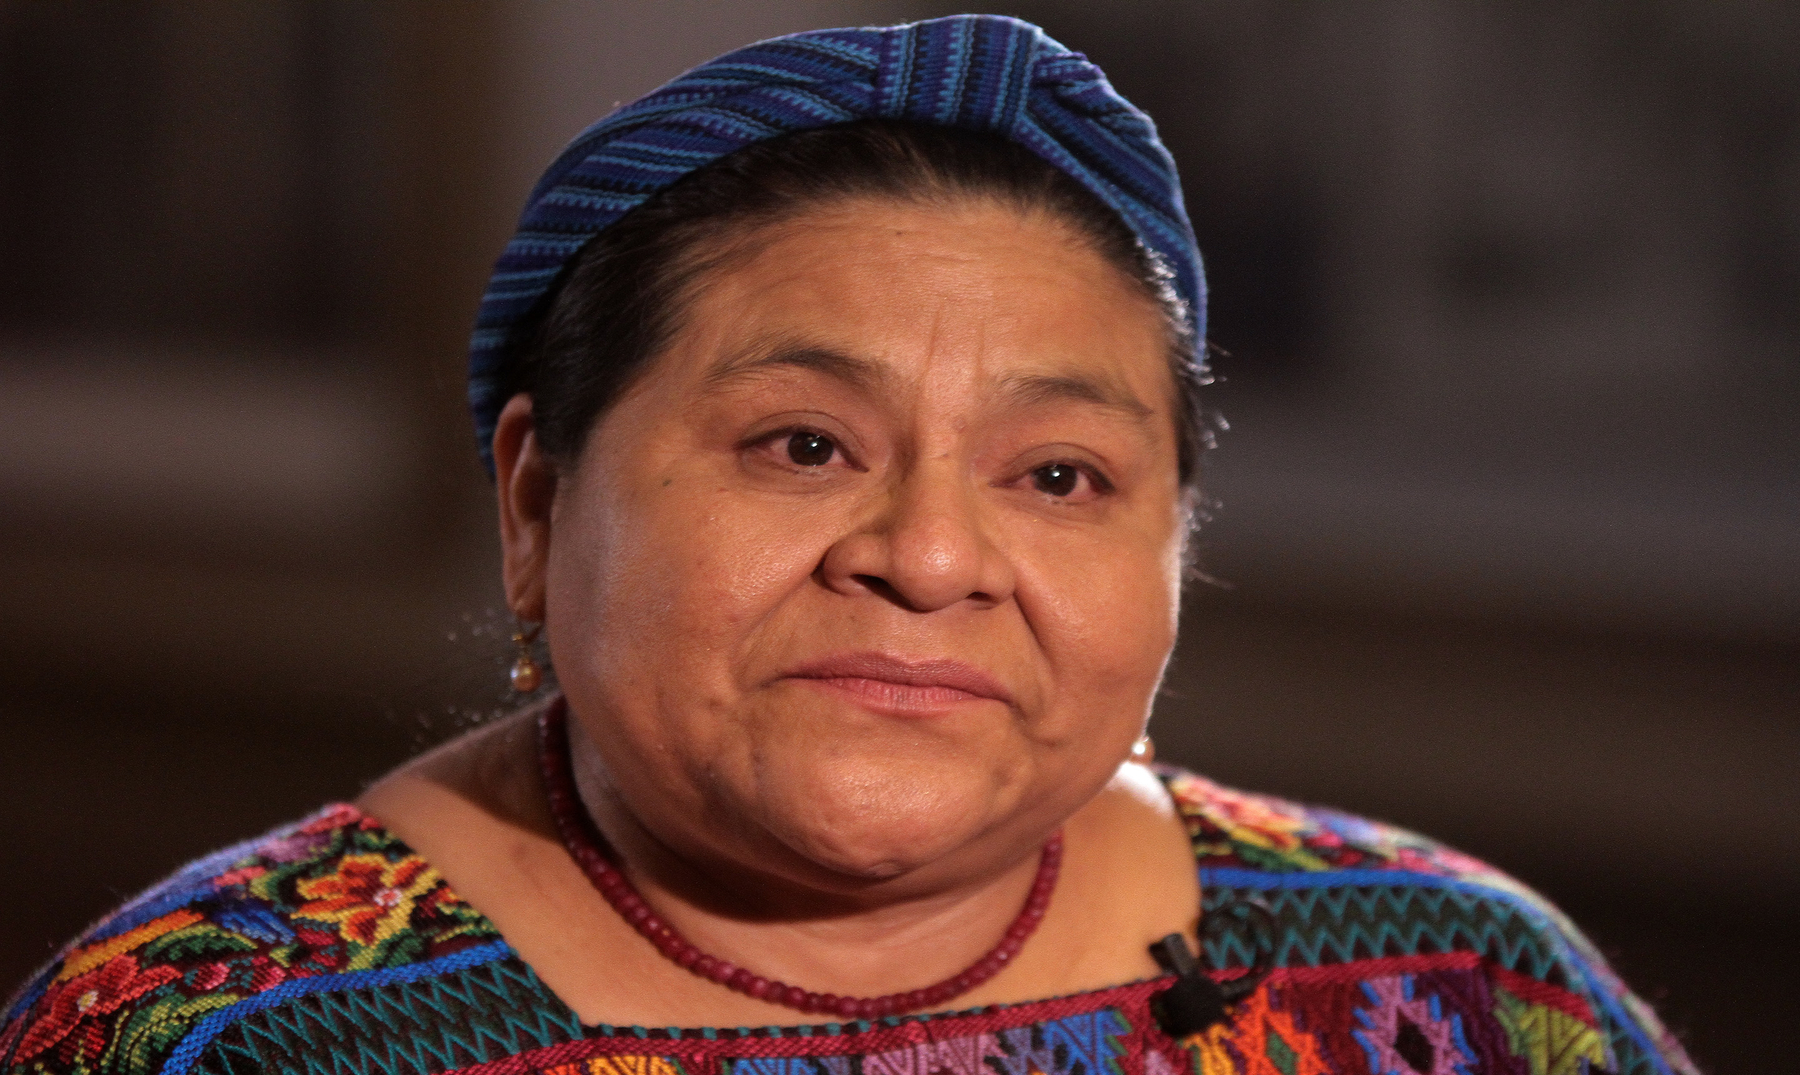 70 Frases de Rigoberta Menchú | Defensora de los indígenas [Imágenes]